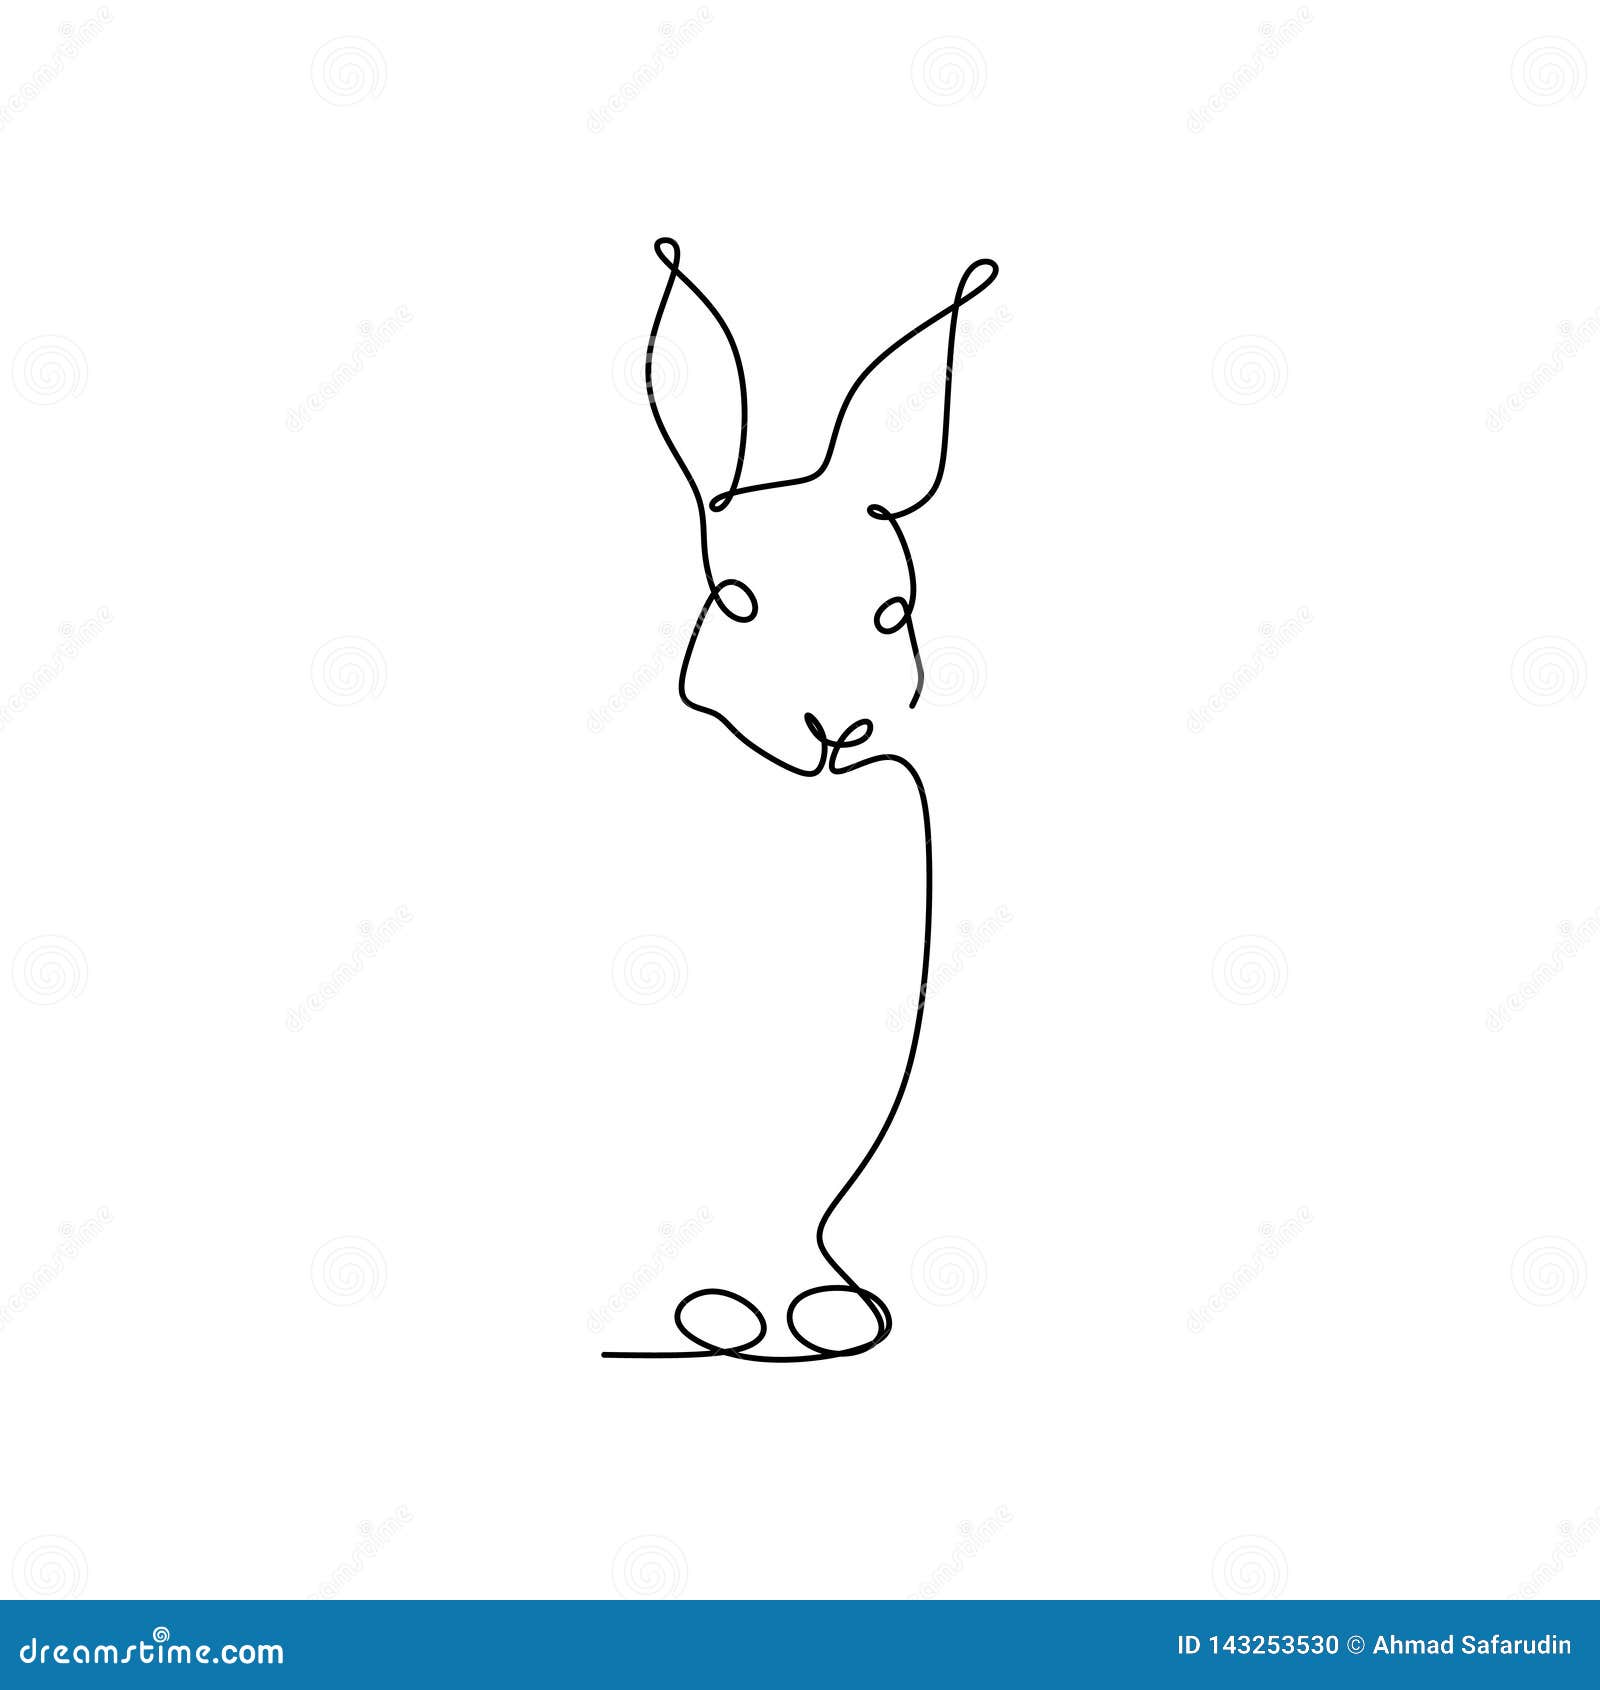 I Disegni A Tratteggio Tengono Sugli Animali Del Coniglio Linee Semplici Illustrazione Vettoriale Illustrazione Di Piano Lepri